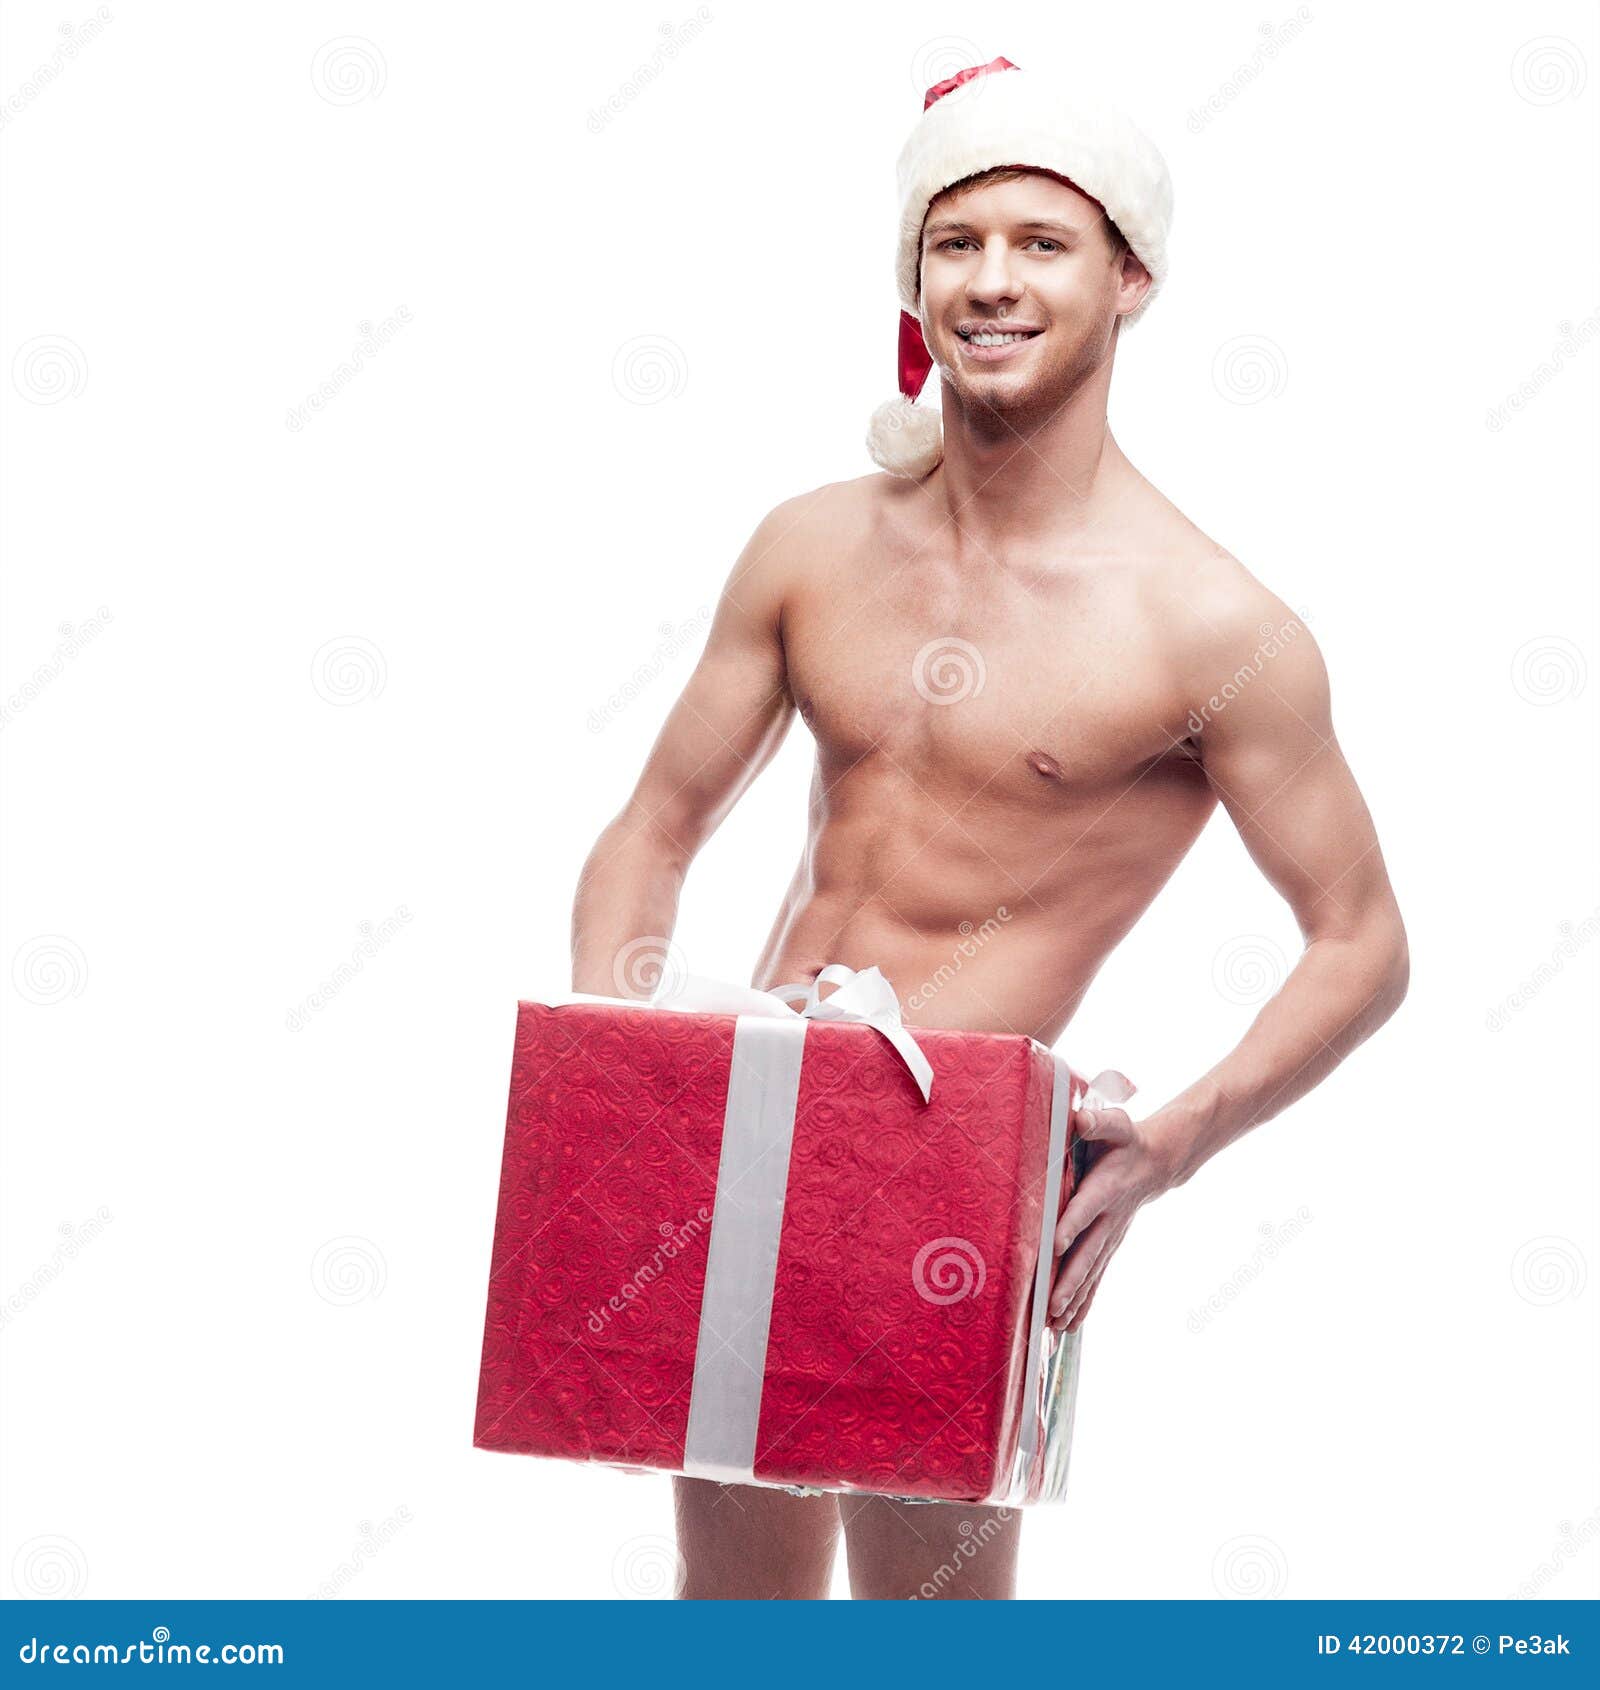 Prever Adentro Normalmente Hombre Atractivo De La Navidad Foto de archivo - Imagen de adulto, sonrisa:  42000372